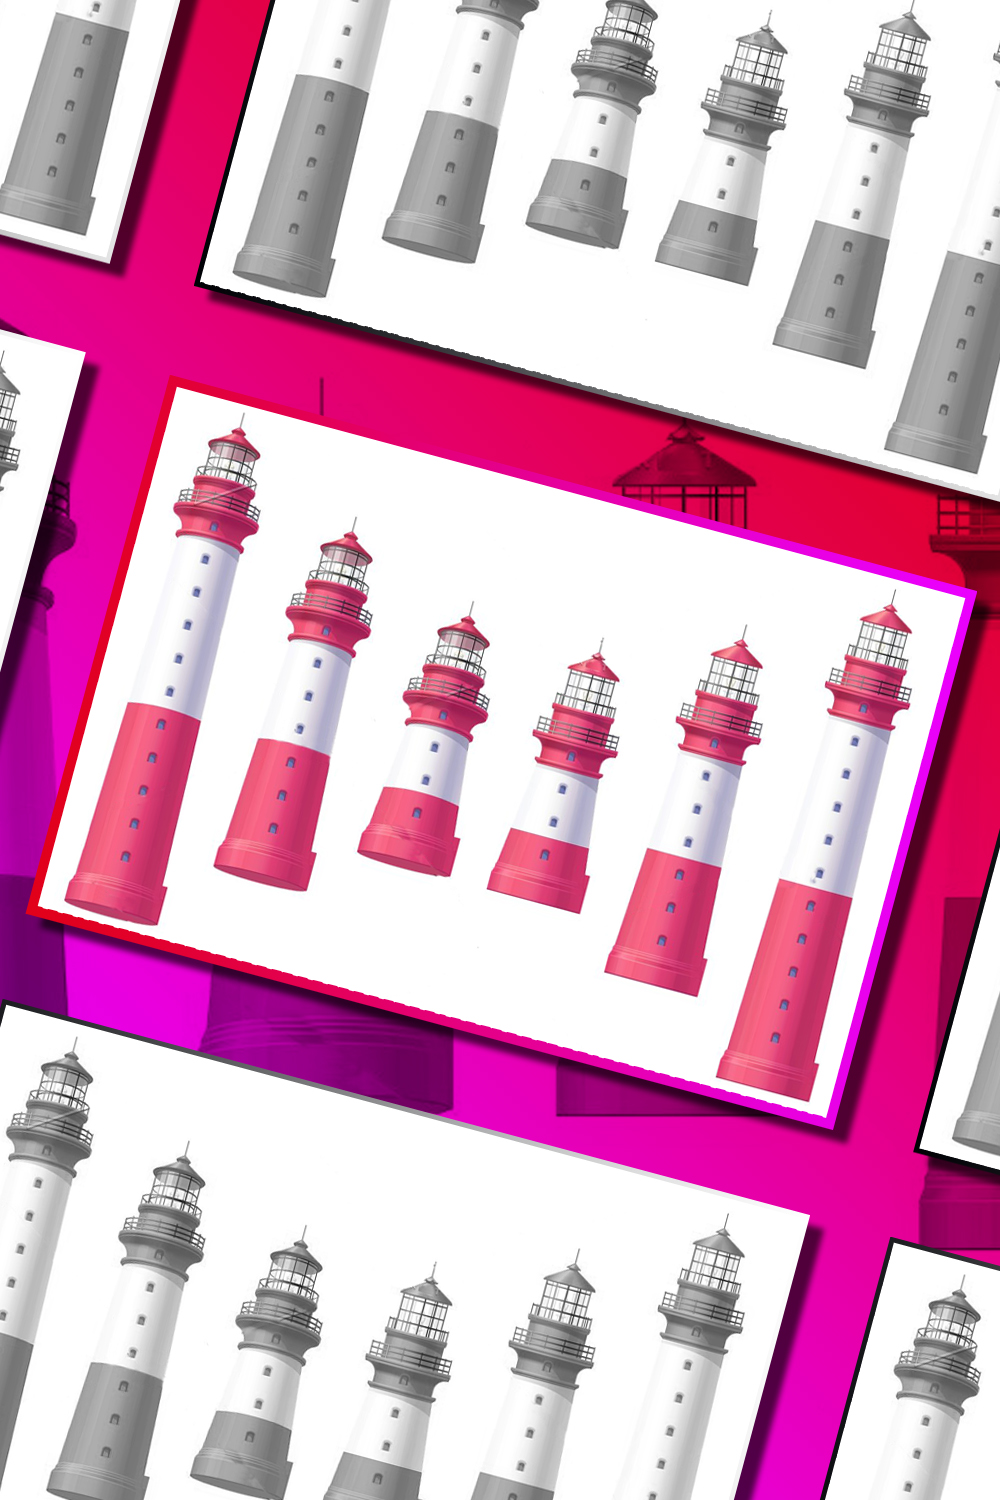 Illustrations lighthouse light house beacon set of pinterest.